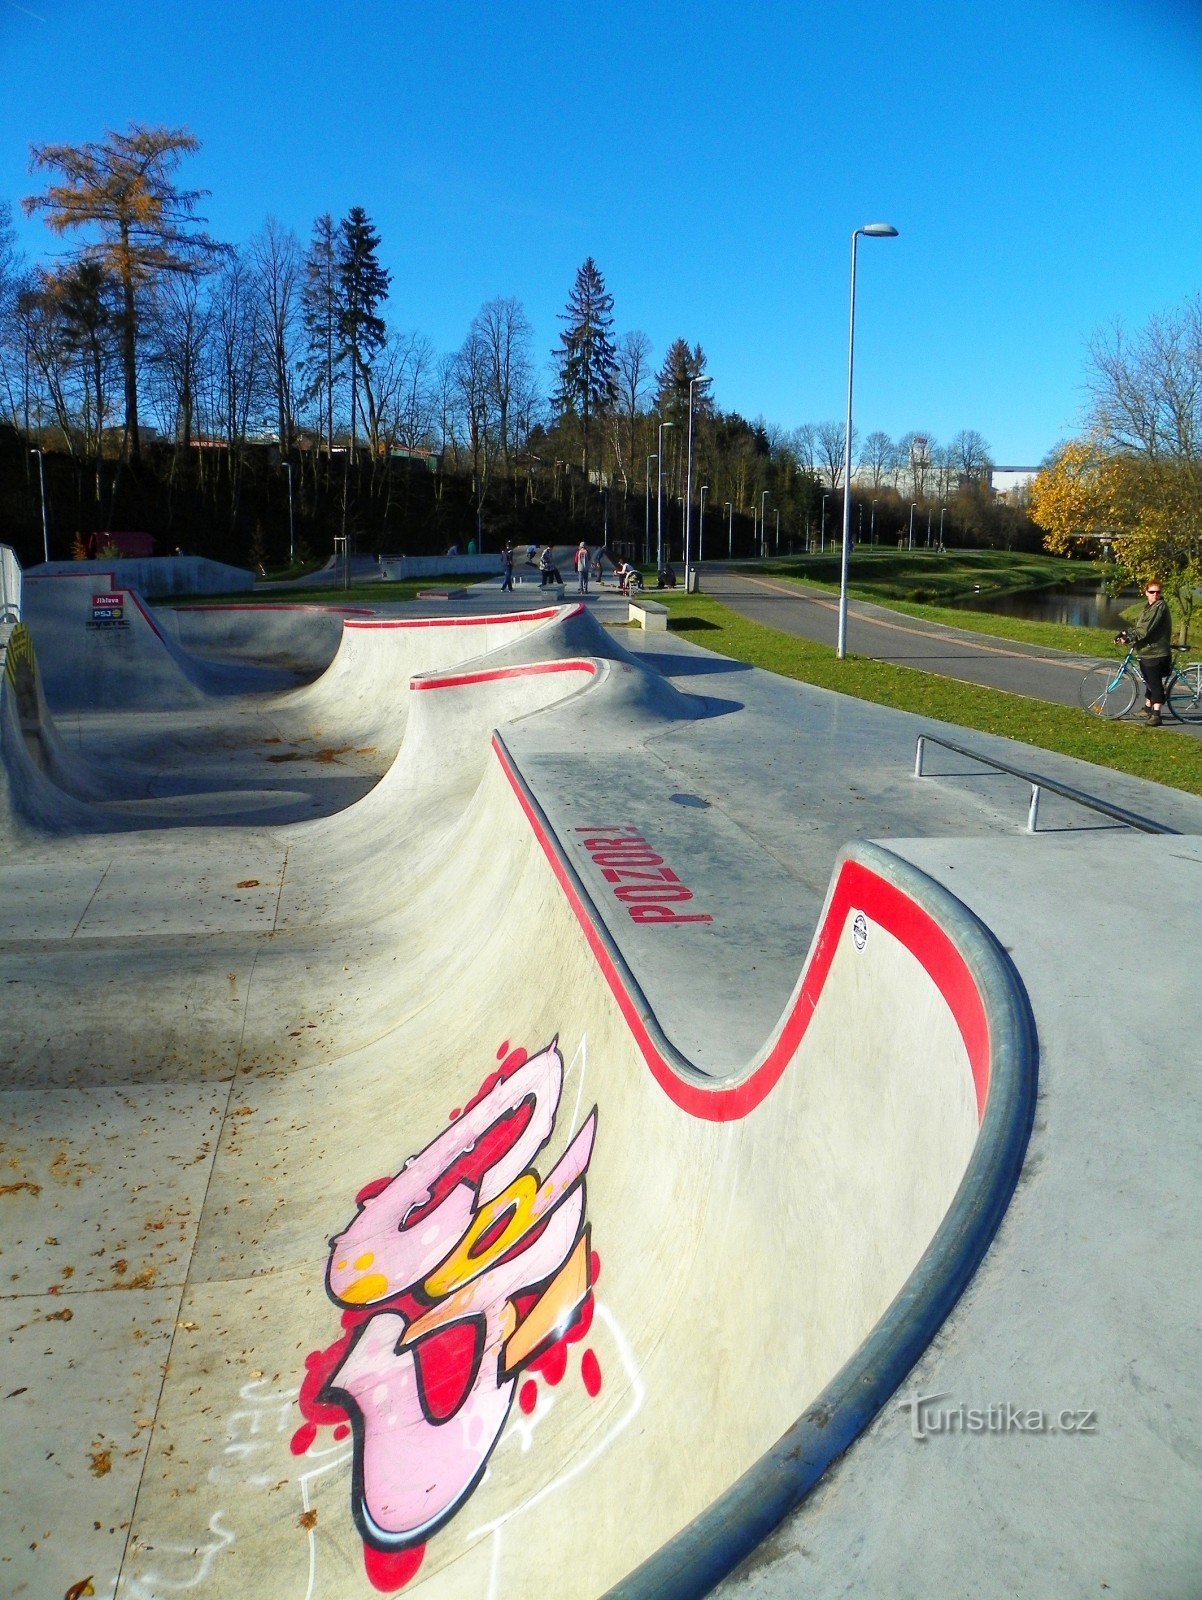 Скейт-парк Їглава – Český mlýn